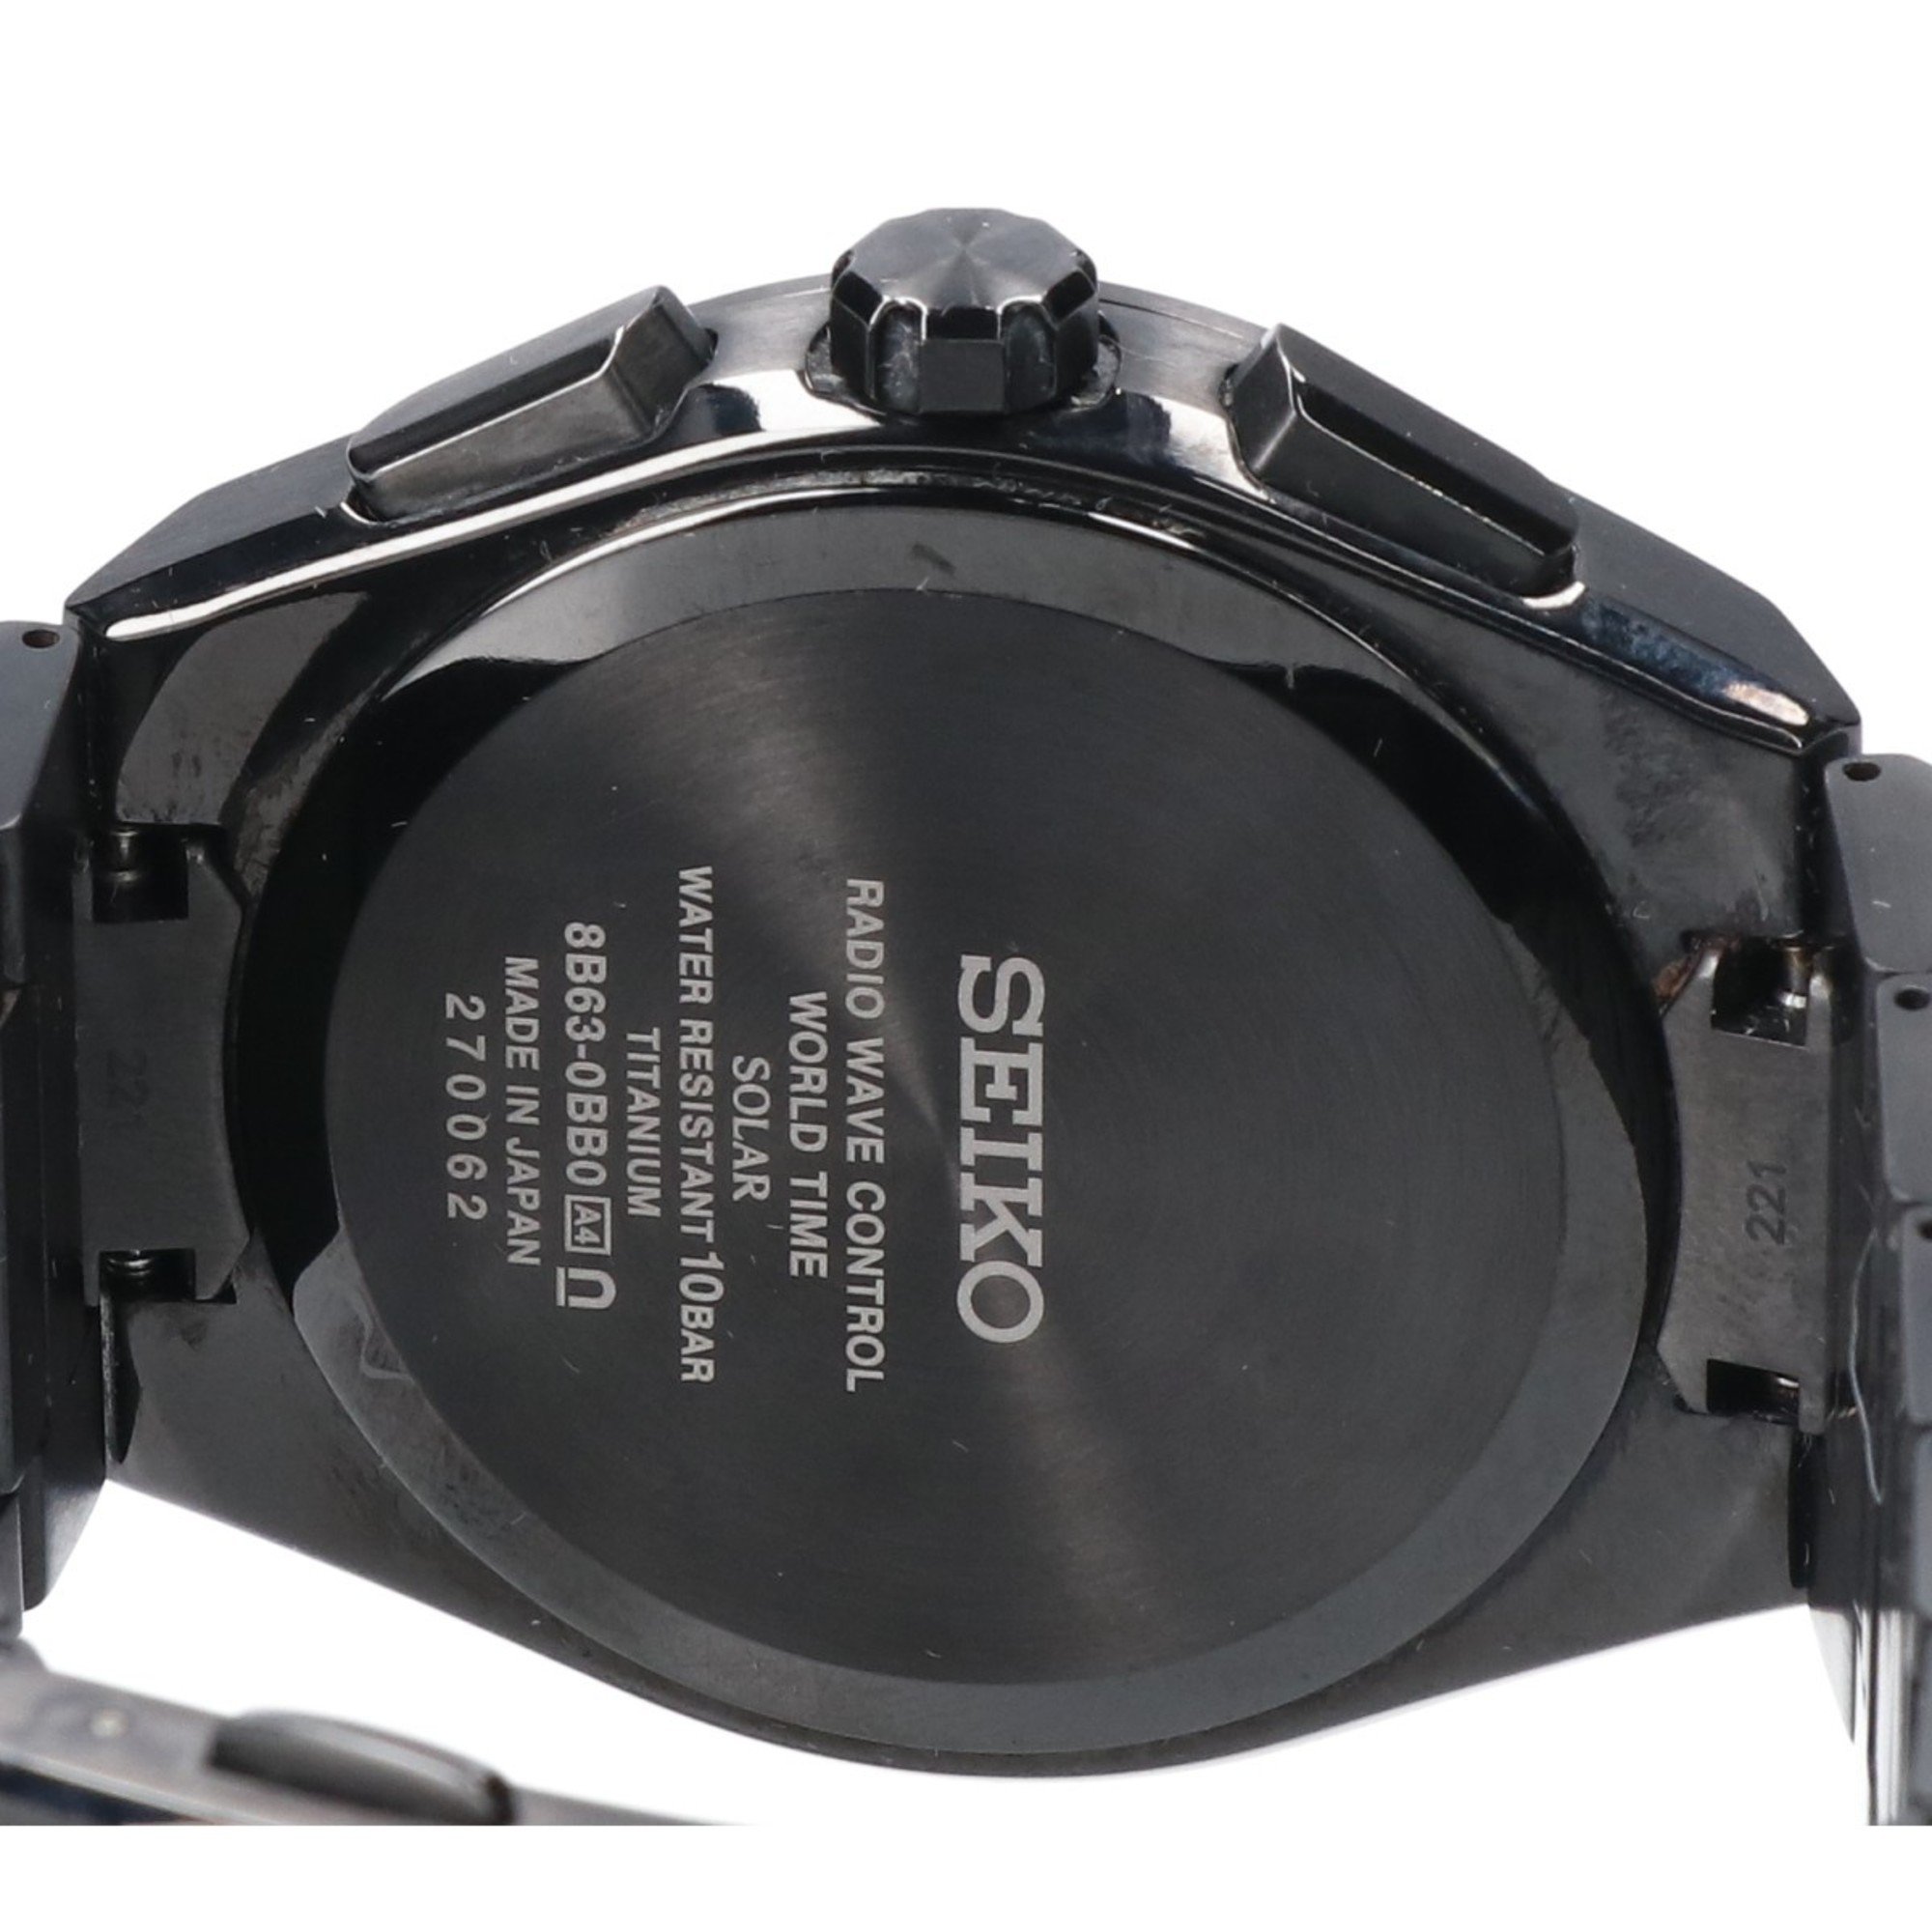 SEIKO 8B630BB0 SBXY041 Astron Nexter Black Titanium Solar Radio Wristwatch Men's